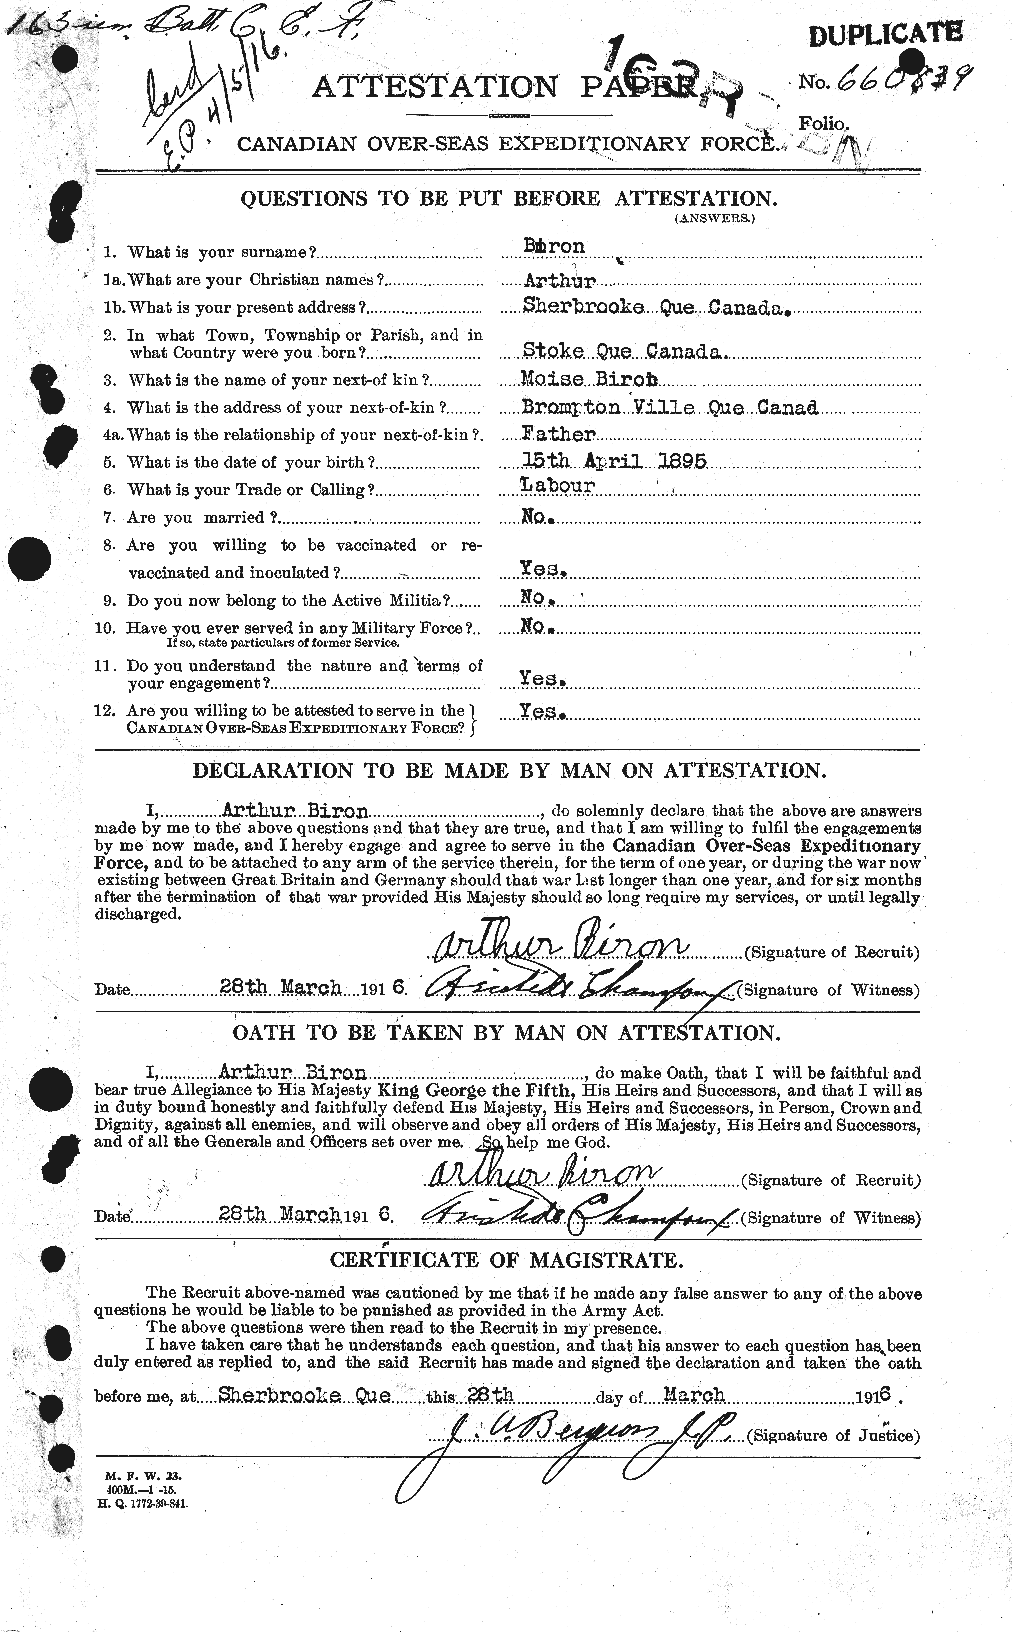 Dossiers du Personnel de la Première Guerre mondiale - CEC 243993a